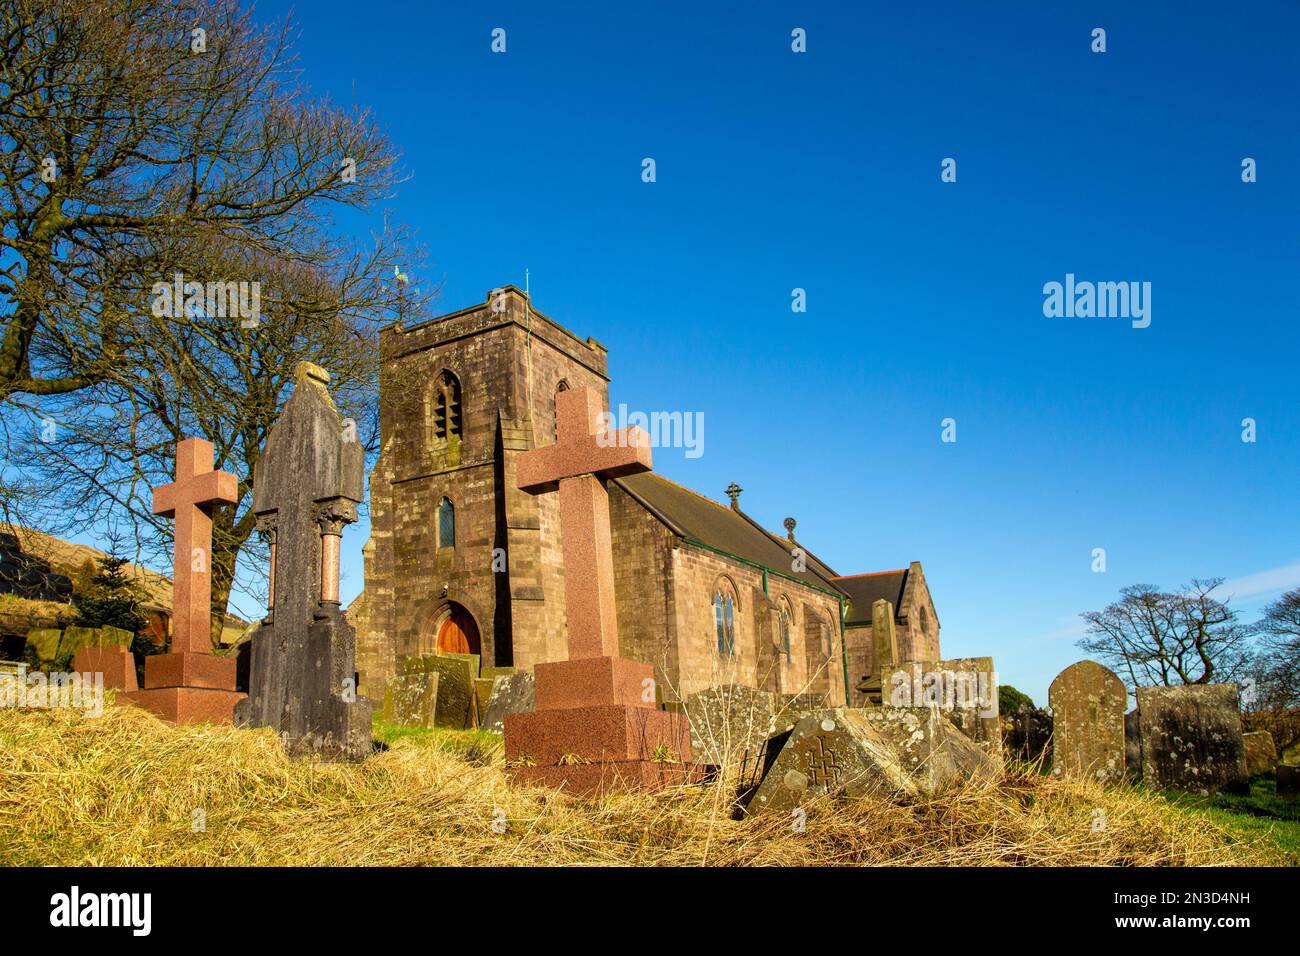 L'église paroissiale de St Pauls située à Flash, le plus haut village de Britain Quarnford, Staffordshire Moorlands. Peak District Angleterre Banque D'Images